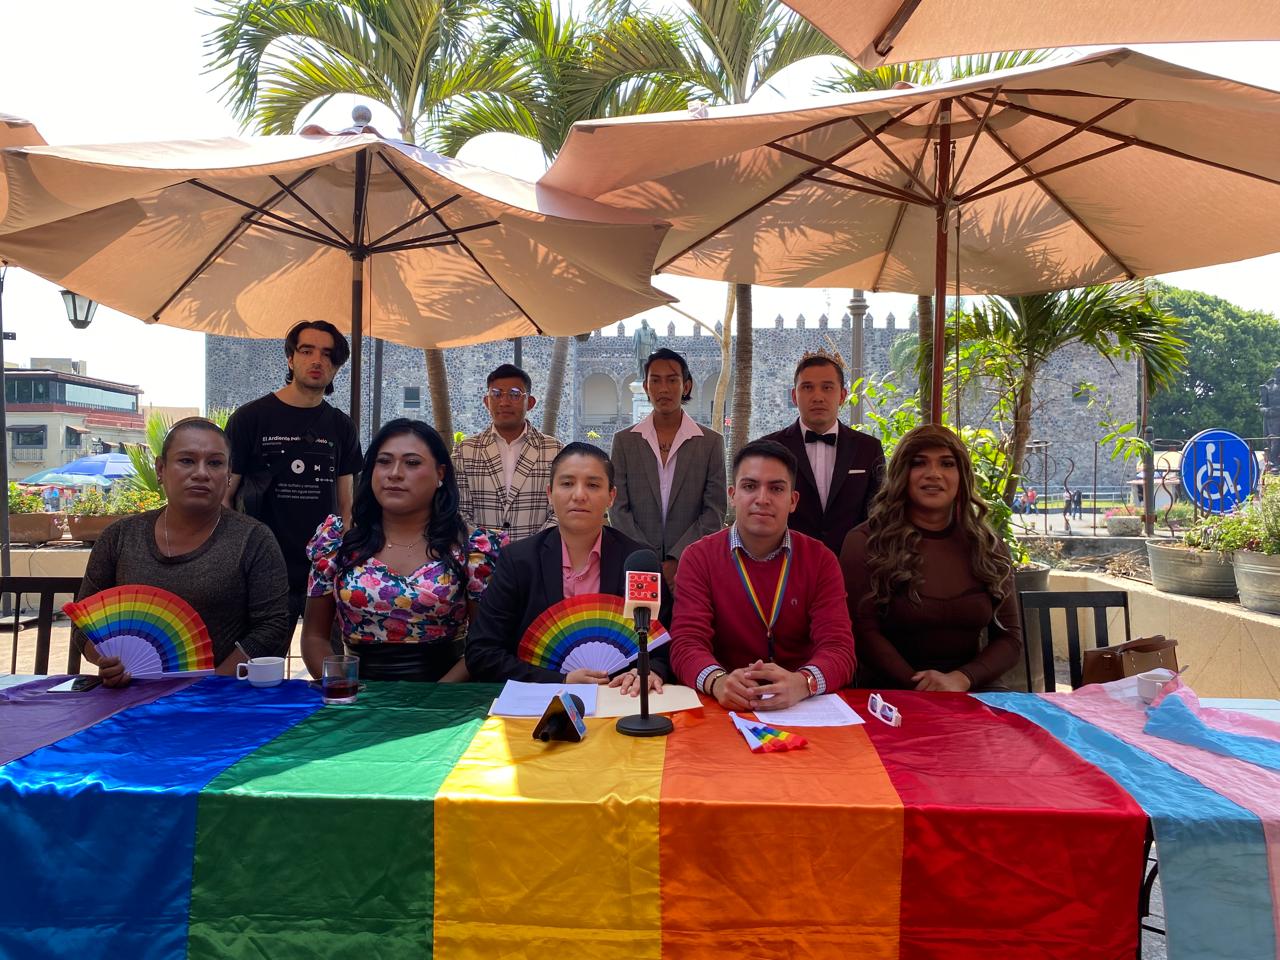 Un grupo de personas alrededor de una mesa con un paraguas de colores

Descripción generada automáticamente